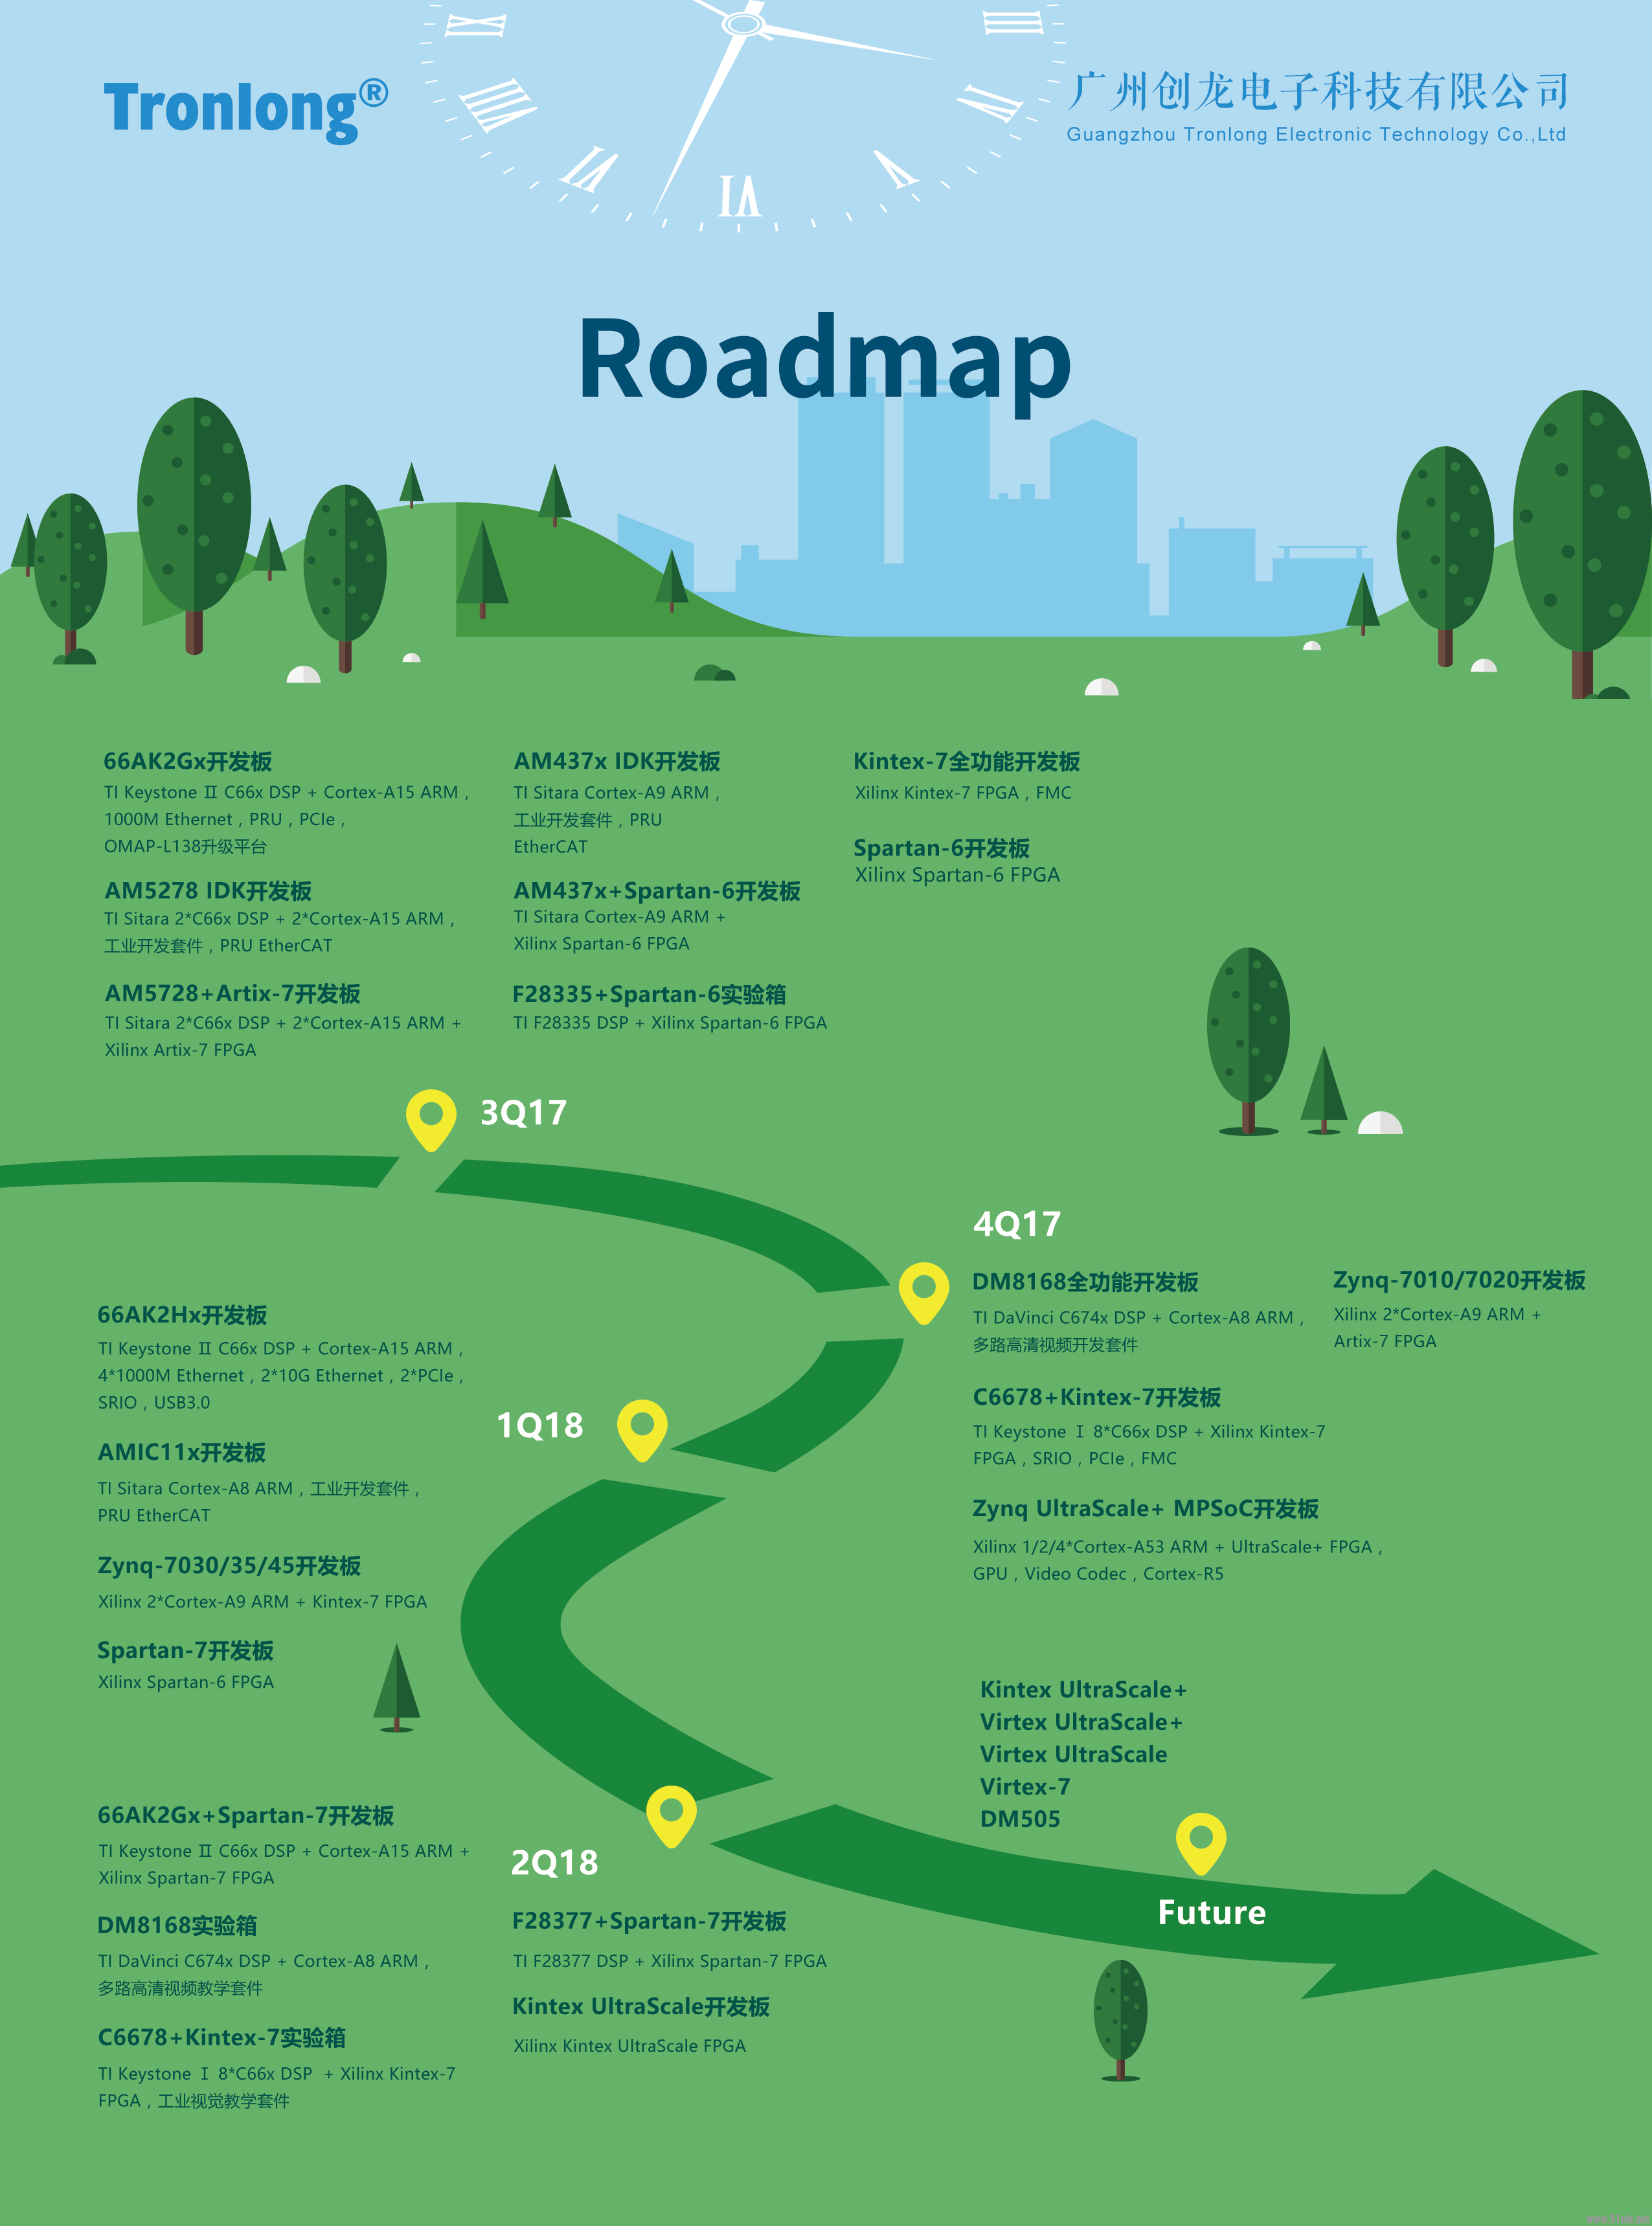 roadmap.png